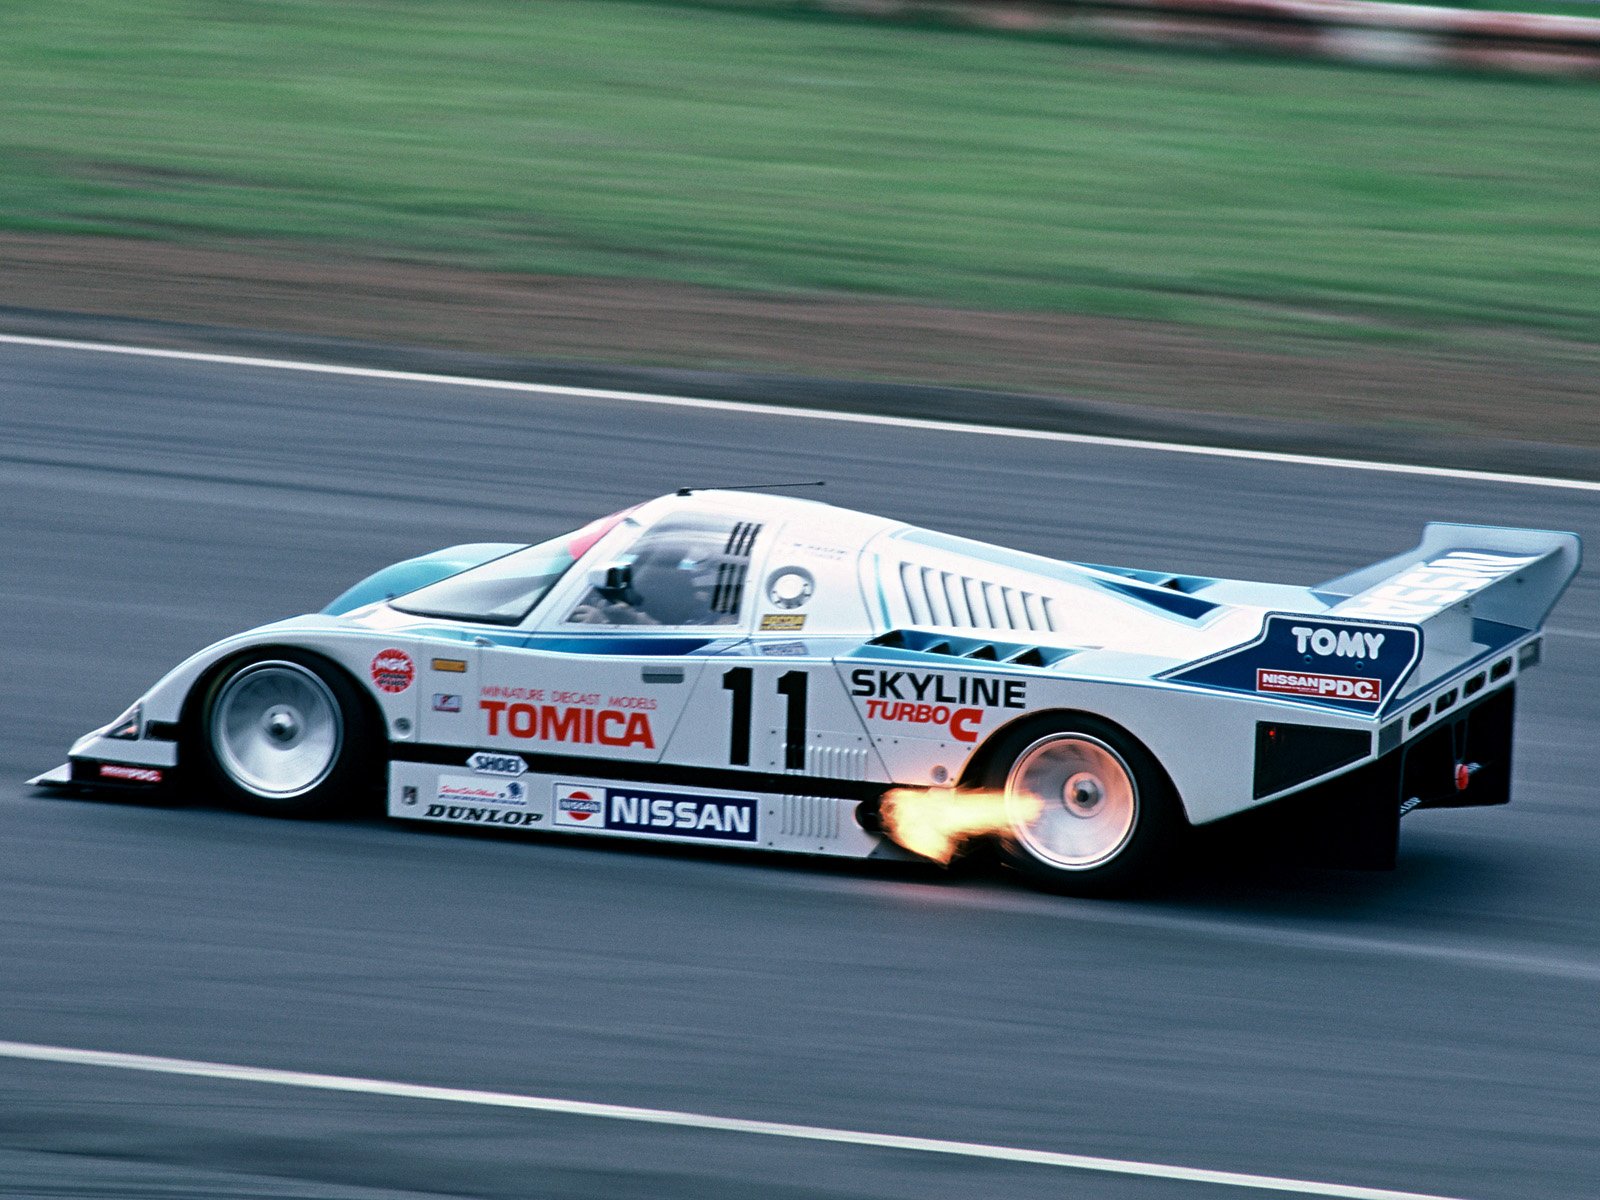 1985, Nissan, Skyline, Turbo, Group c, Le mans, Lemans, Race, Racing Wallpaper